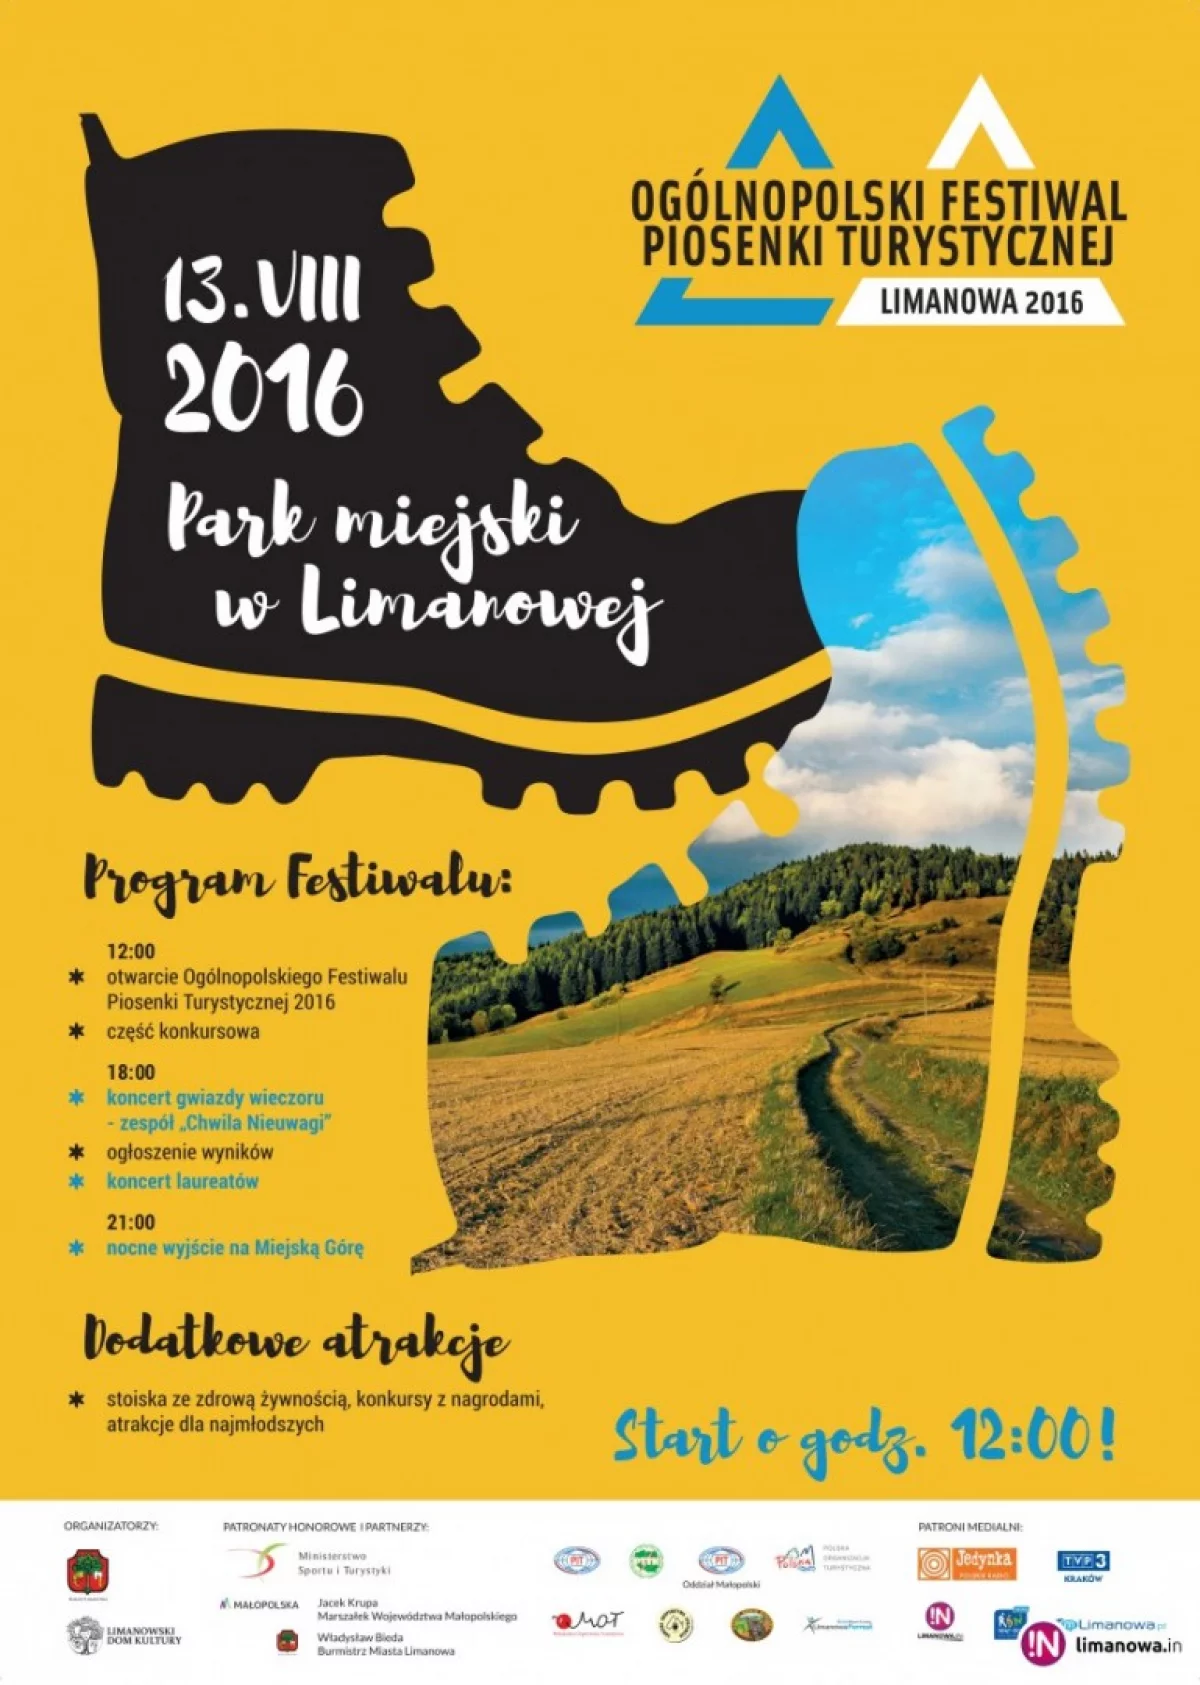 Już w sobotę 13 sierpnia  Ogólnopolski Festiwal Piosenki Turystycznej 2016!